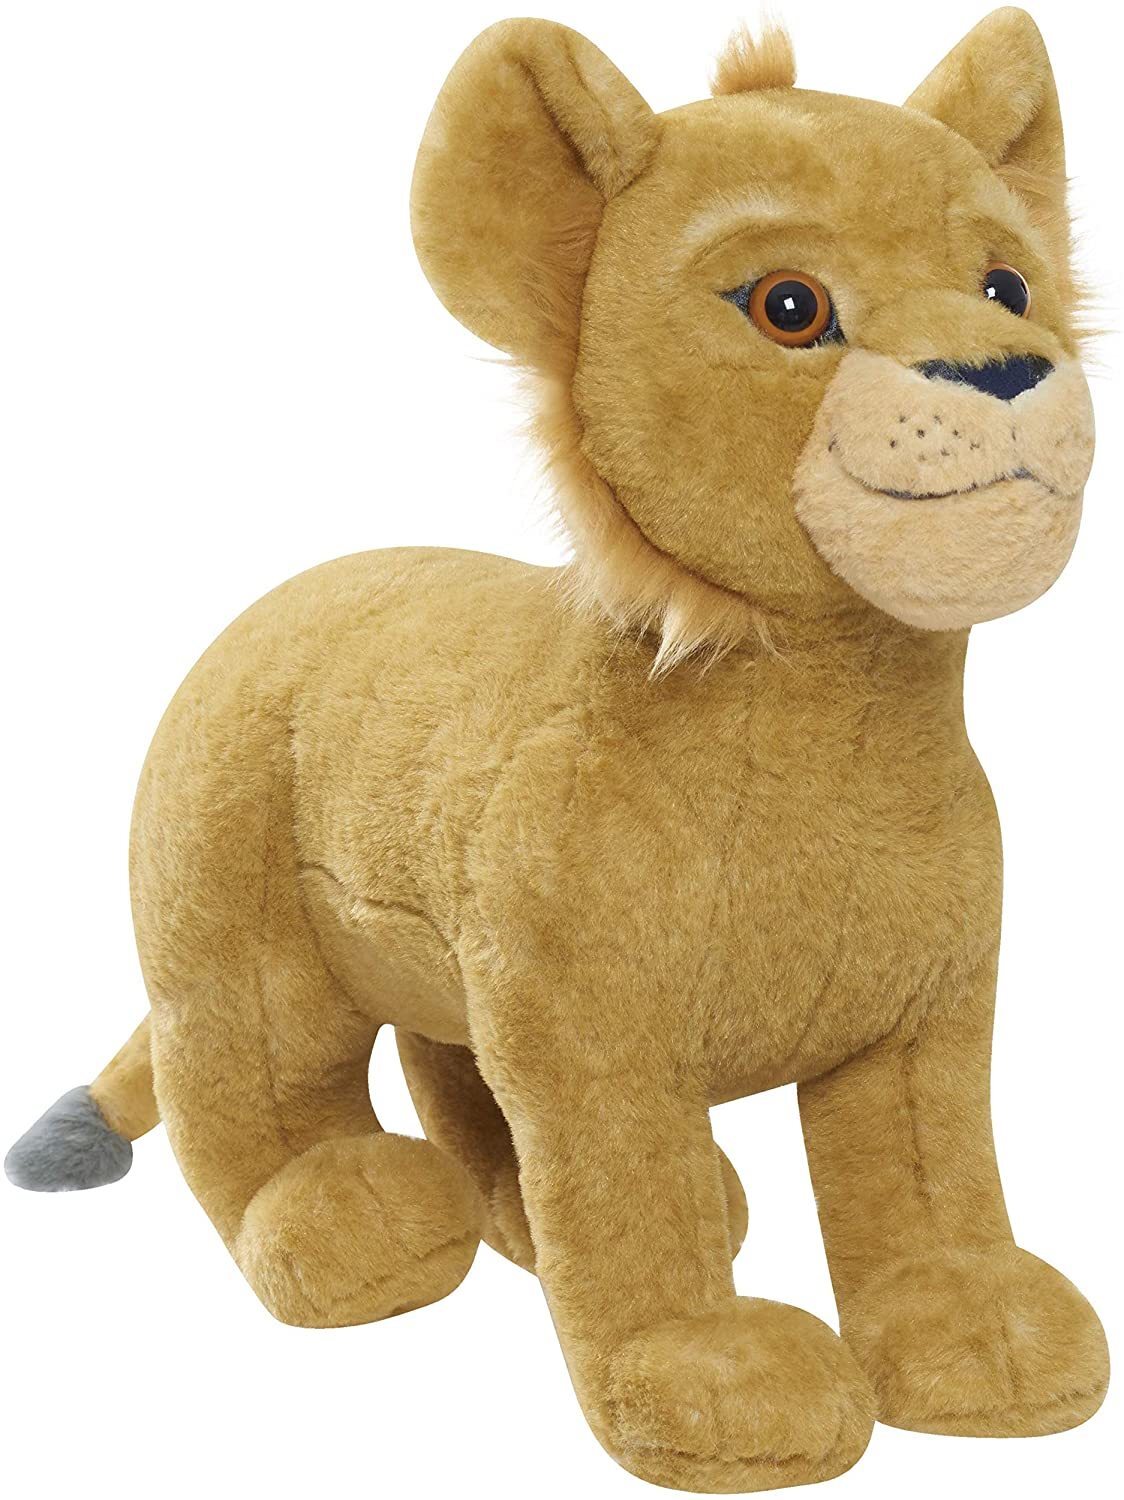 Мягкая игрушка Disney Симба, звук, мультфильм Король Лев, бежевый, 22061